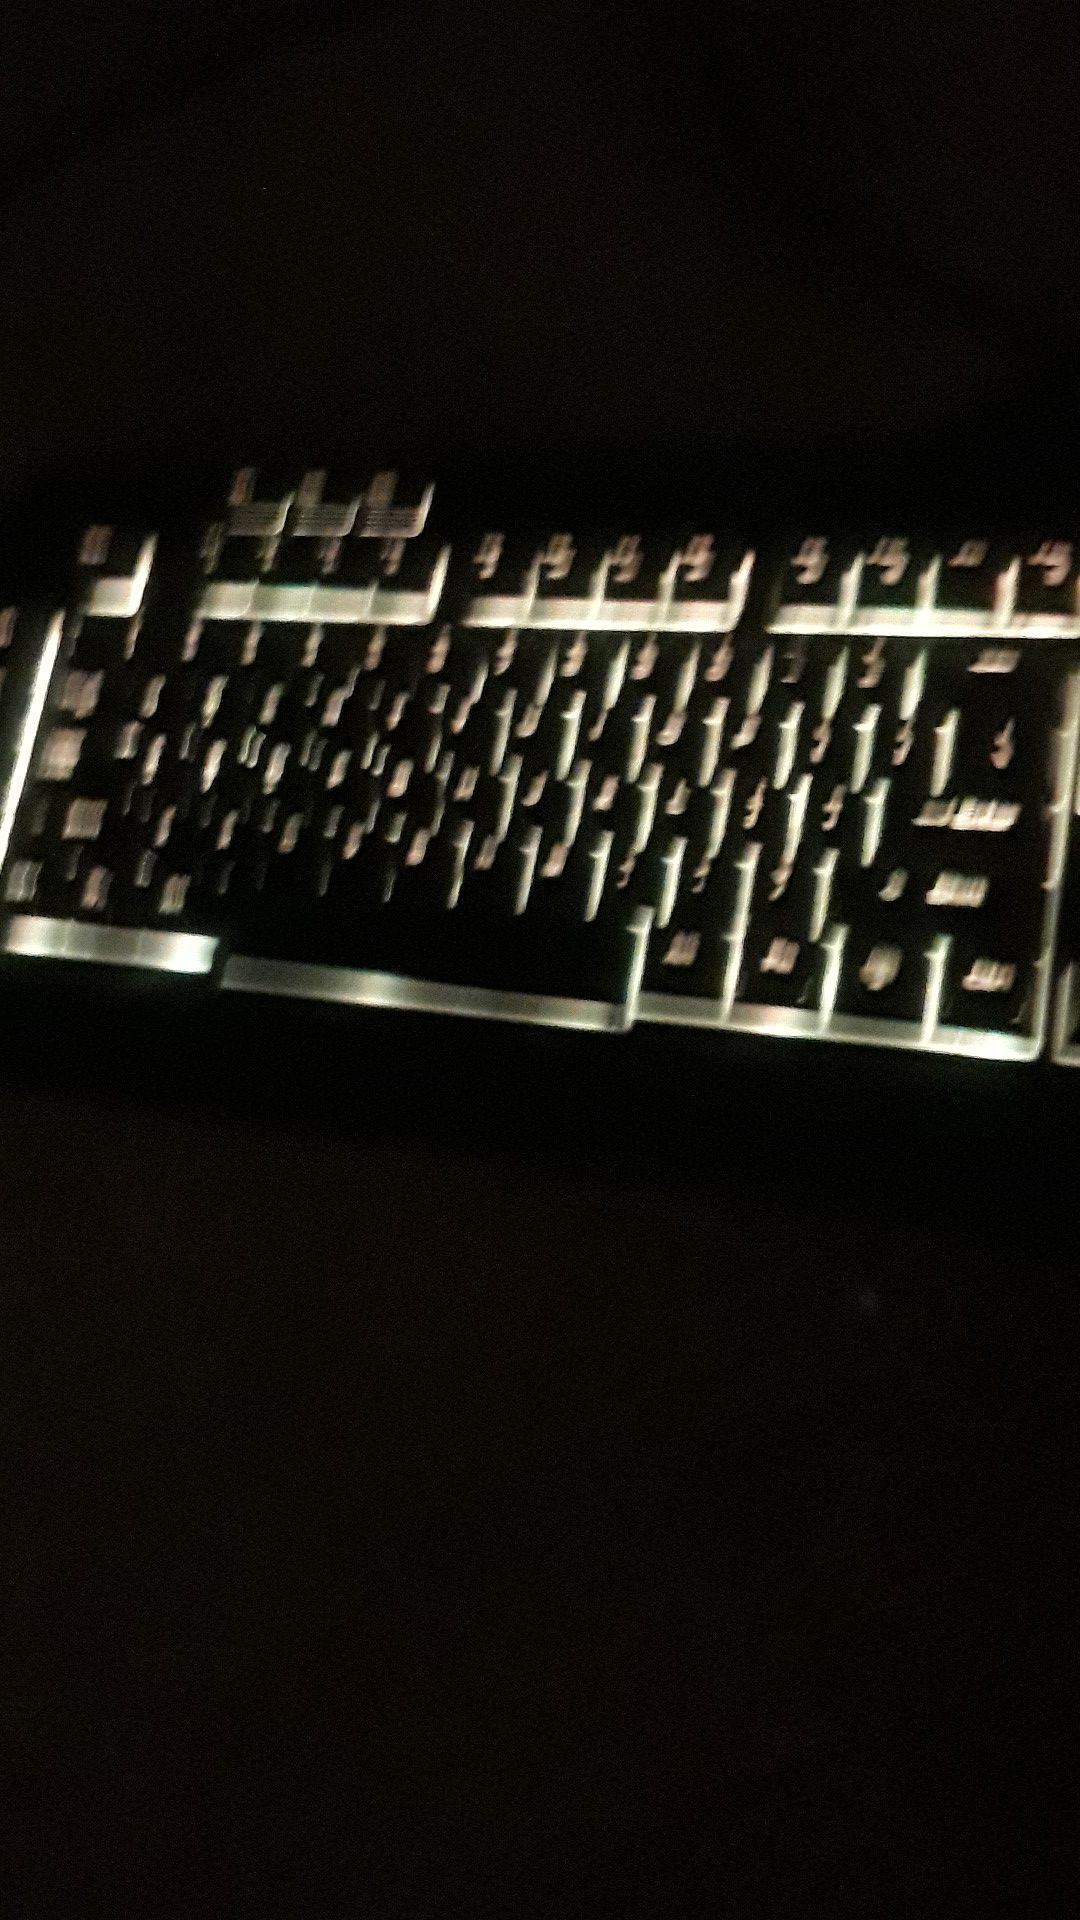 Black web gaming keyboard